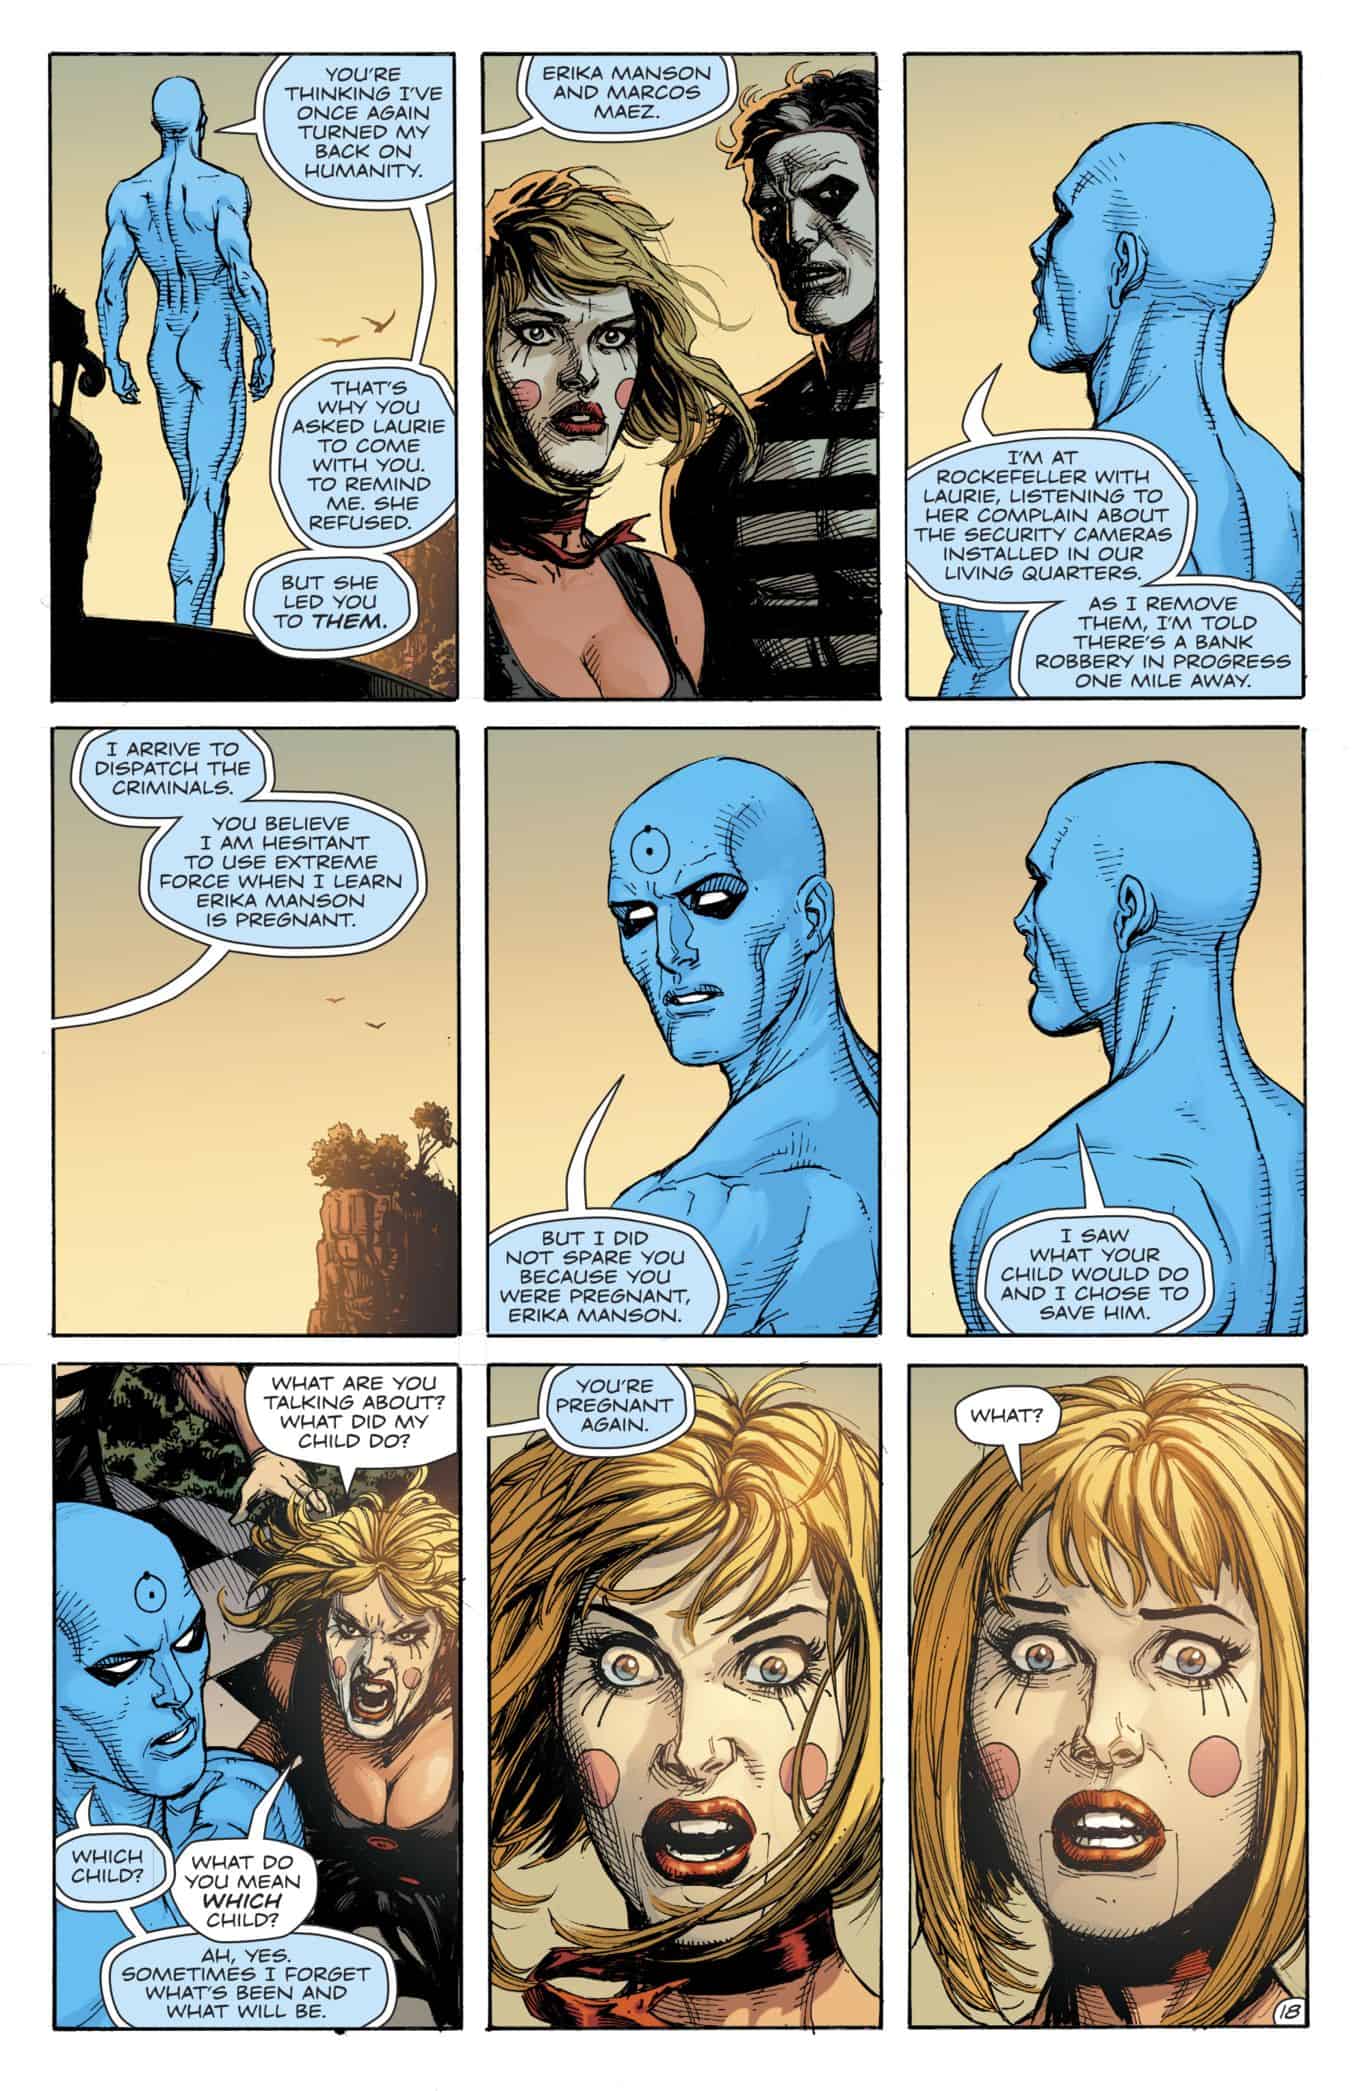 DC Comics Universe & Doomsday Clock #7 Spoilers: The Watchmen’s Doctor Manhattan ...